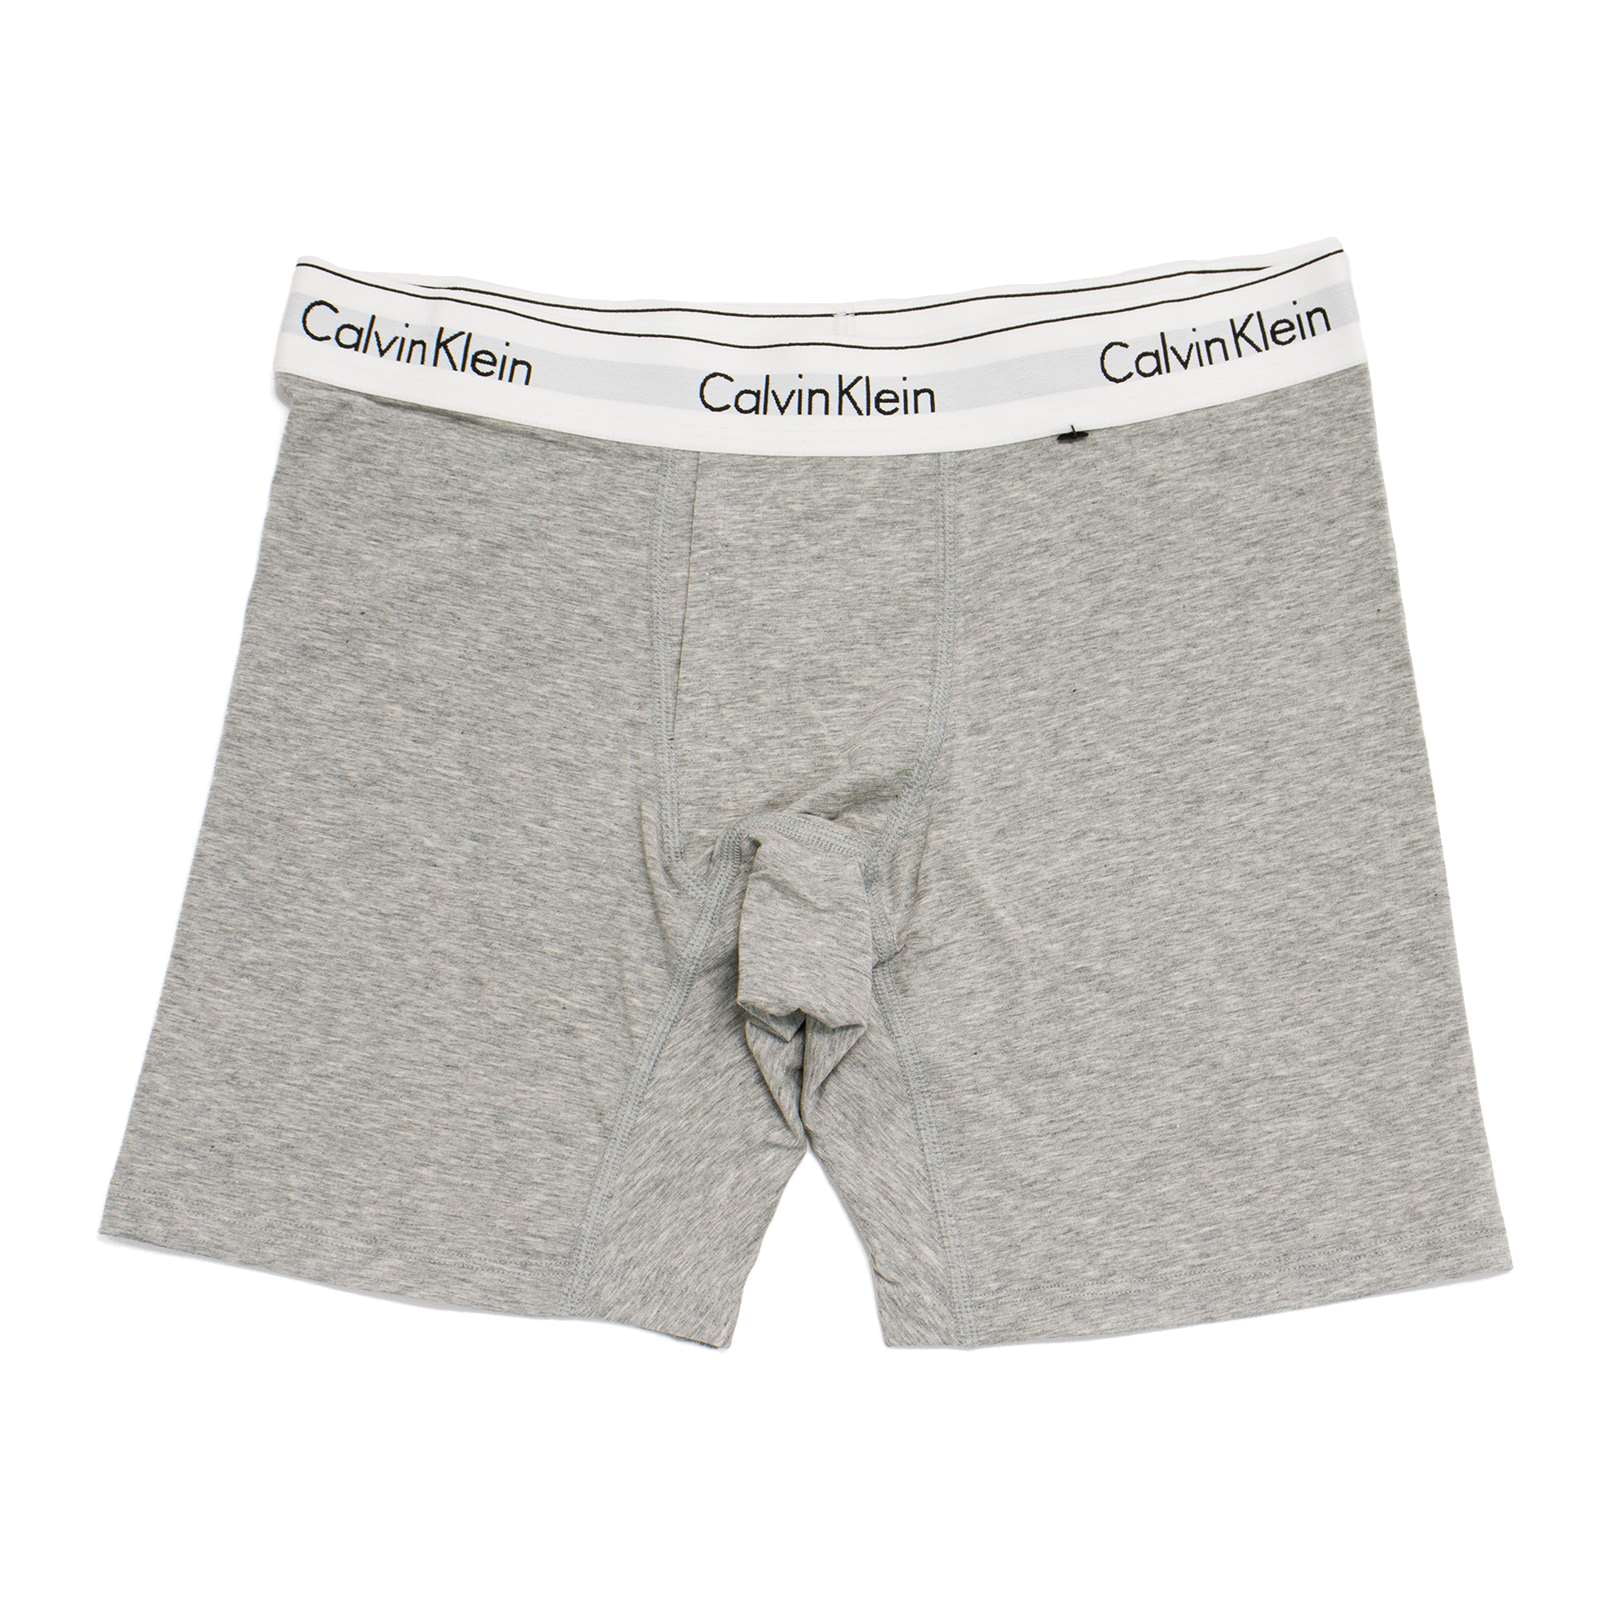 Calvin Klein L61158 Underwear Modern Cotton Boyshort Grey Heather Women's  Size S